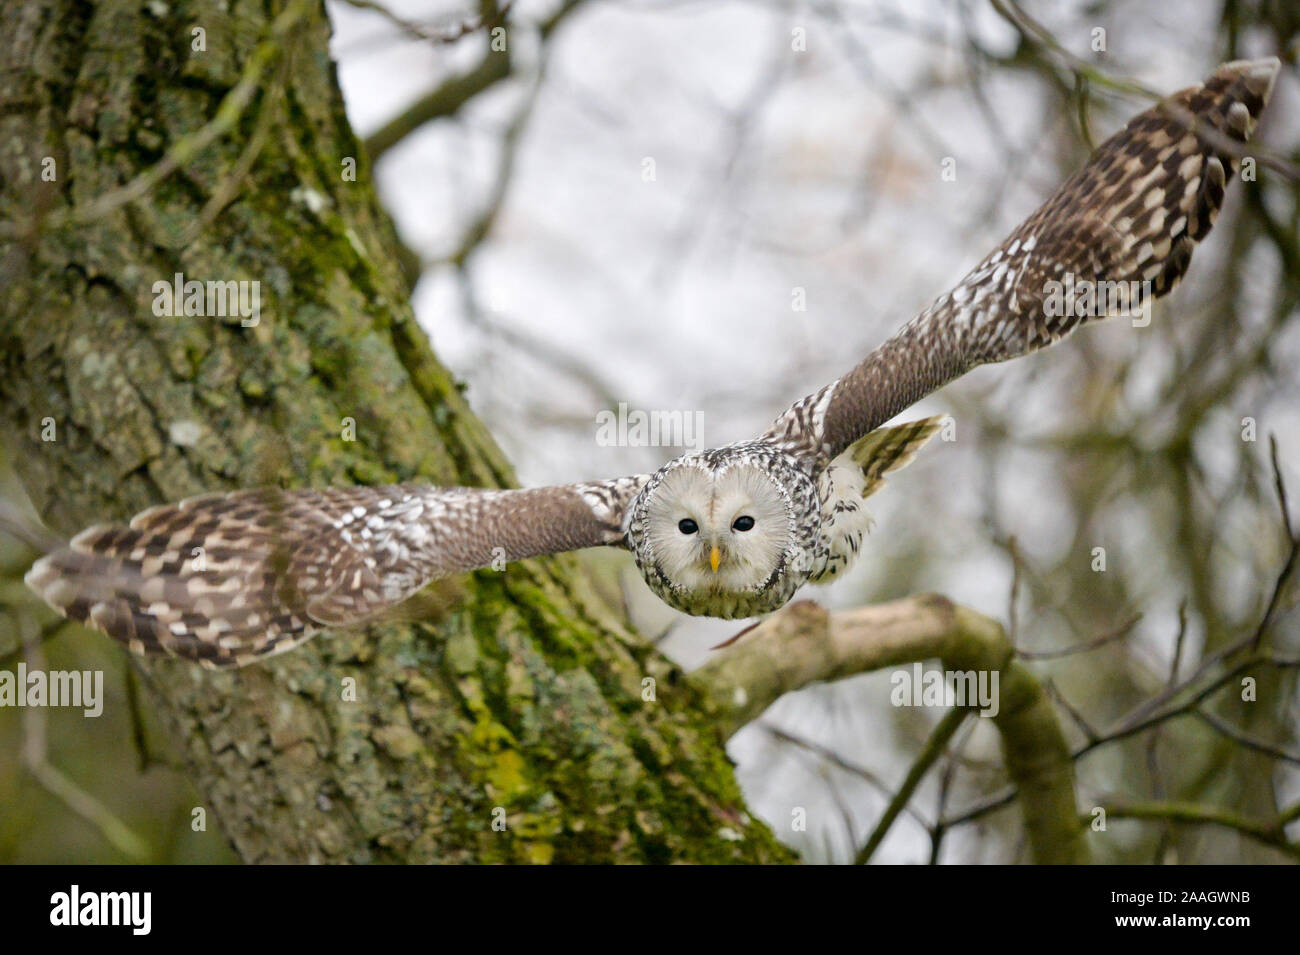 Eine Ural owl während einer Anzeige Flug am Internationalen Zentrum für Greifvögel, Newent, Gloucestershire, wo Sie auf Projekte rund um die Welt helfen zu schützen und viele der am meisten gefährdeten Arten Raubvögel speichern Arbeiten. Ihr Fokus liegt Geier. Stockfoto